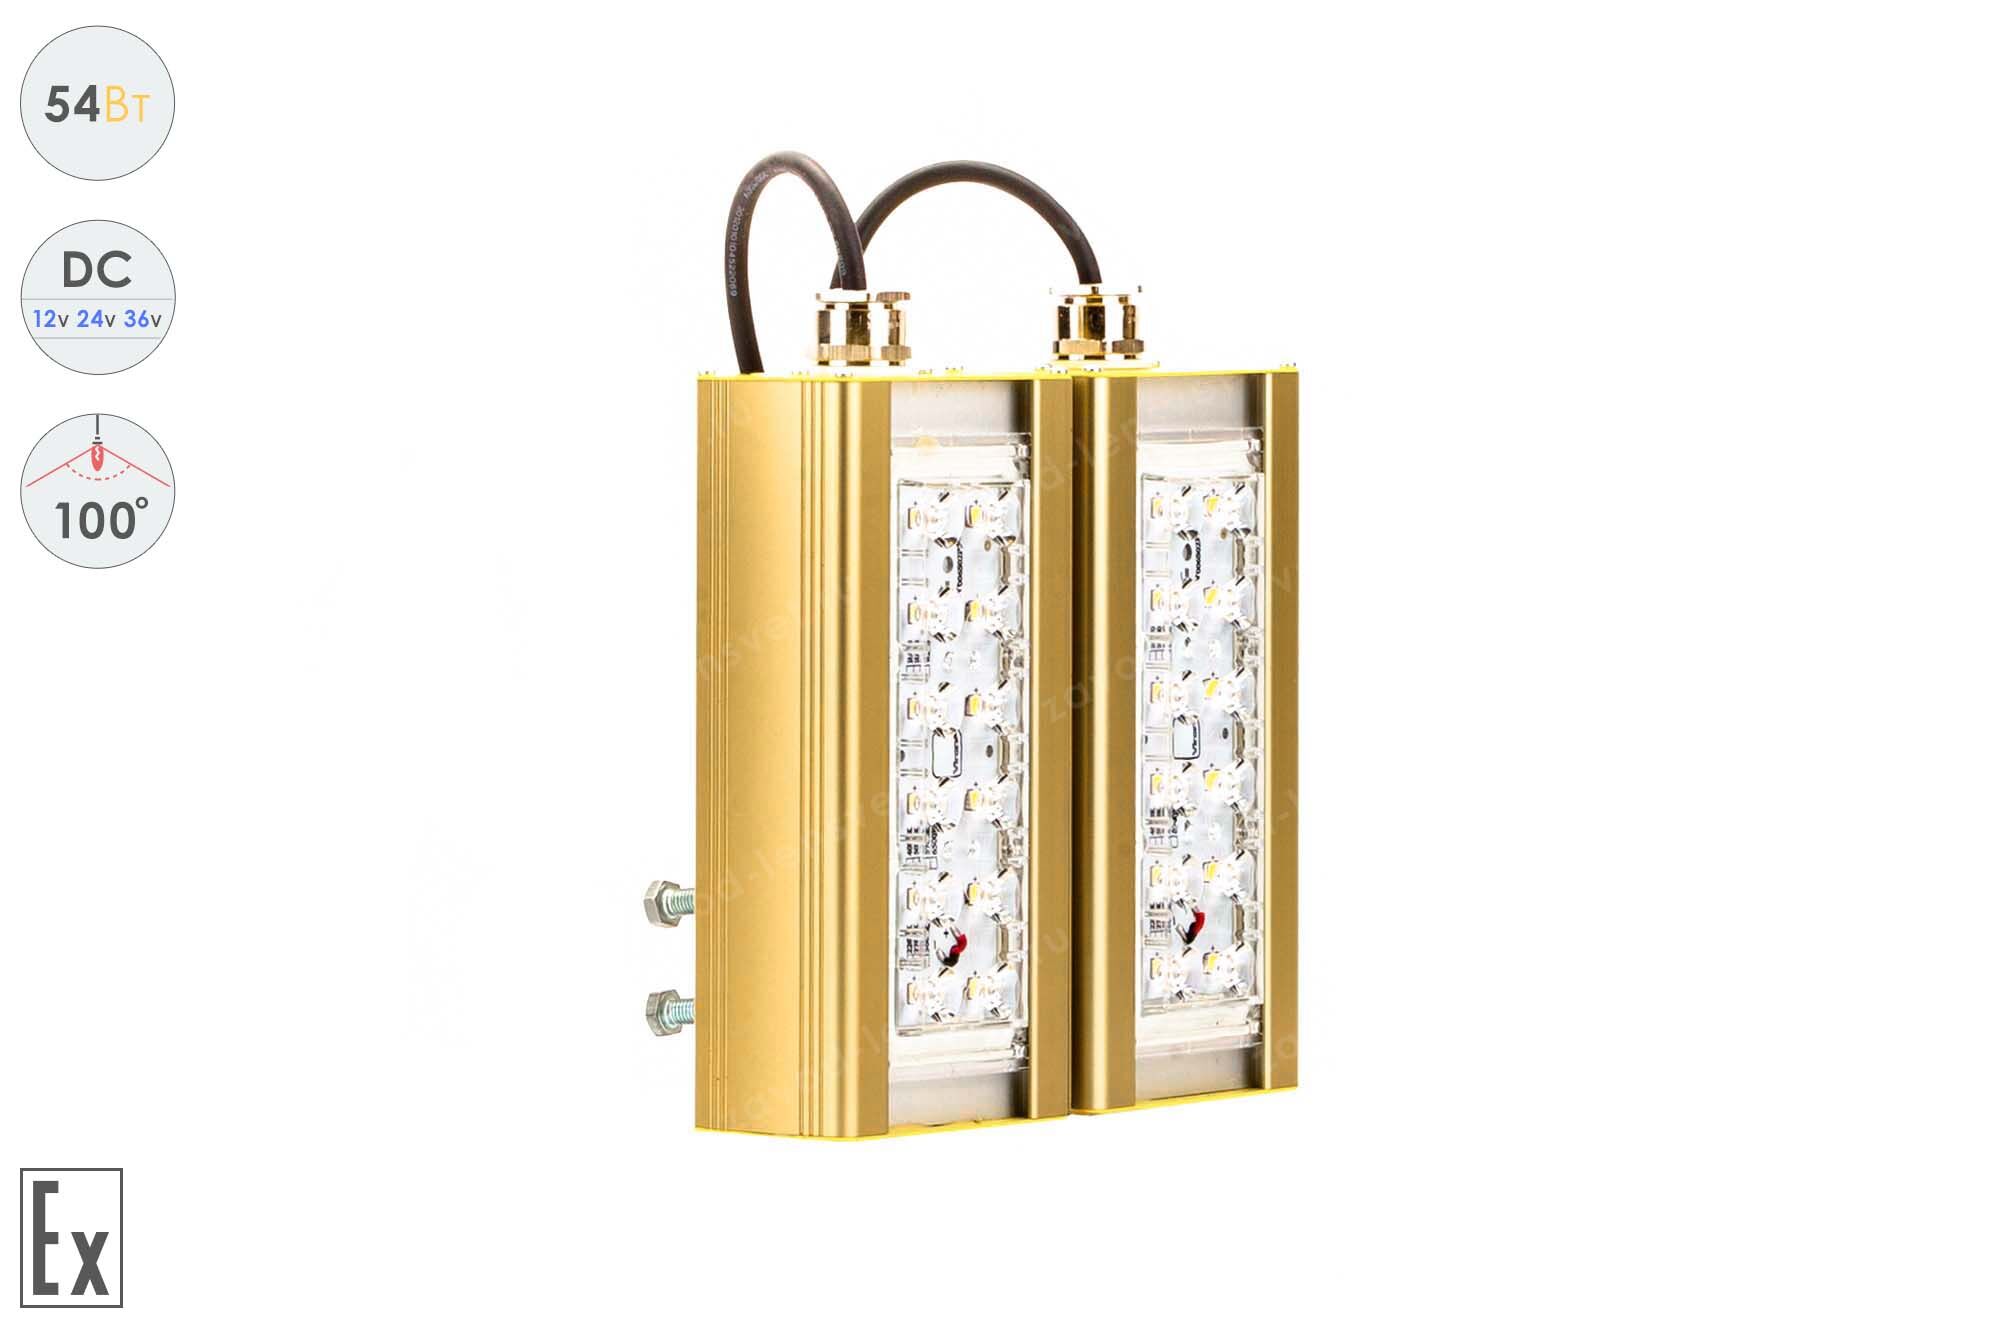 Светодиодный светильник Низковольтный Прожектор Взрывозащищенный GOLD, консоль K-2, 54 Вт, 100°